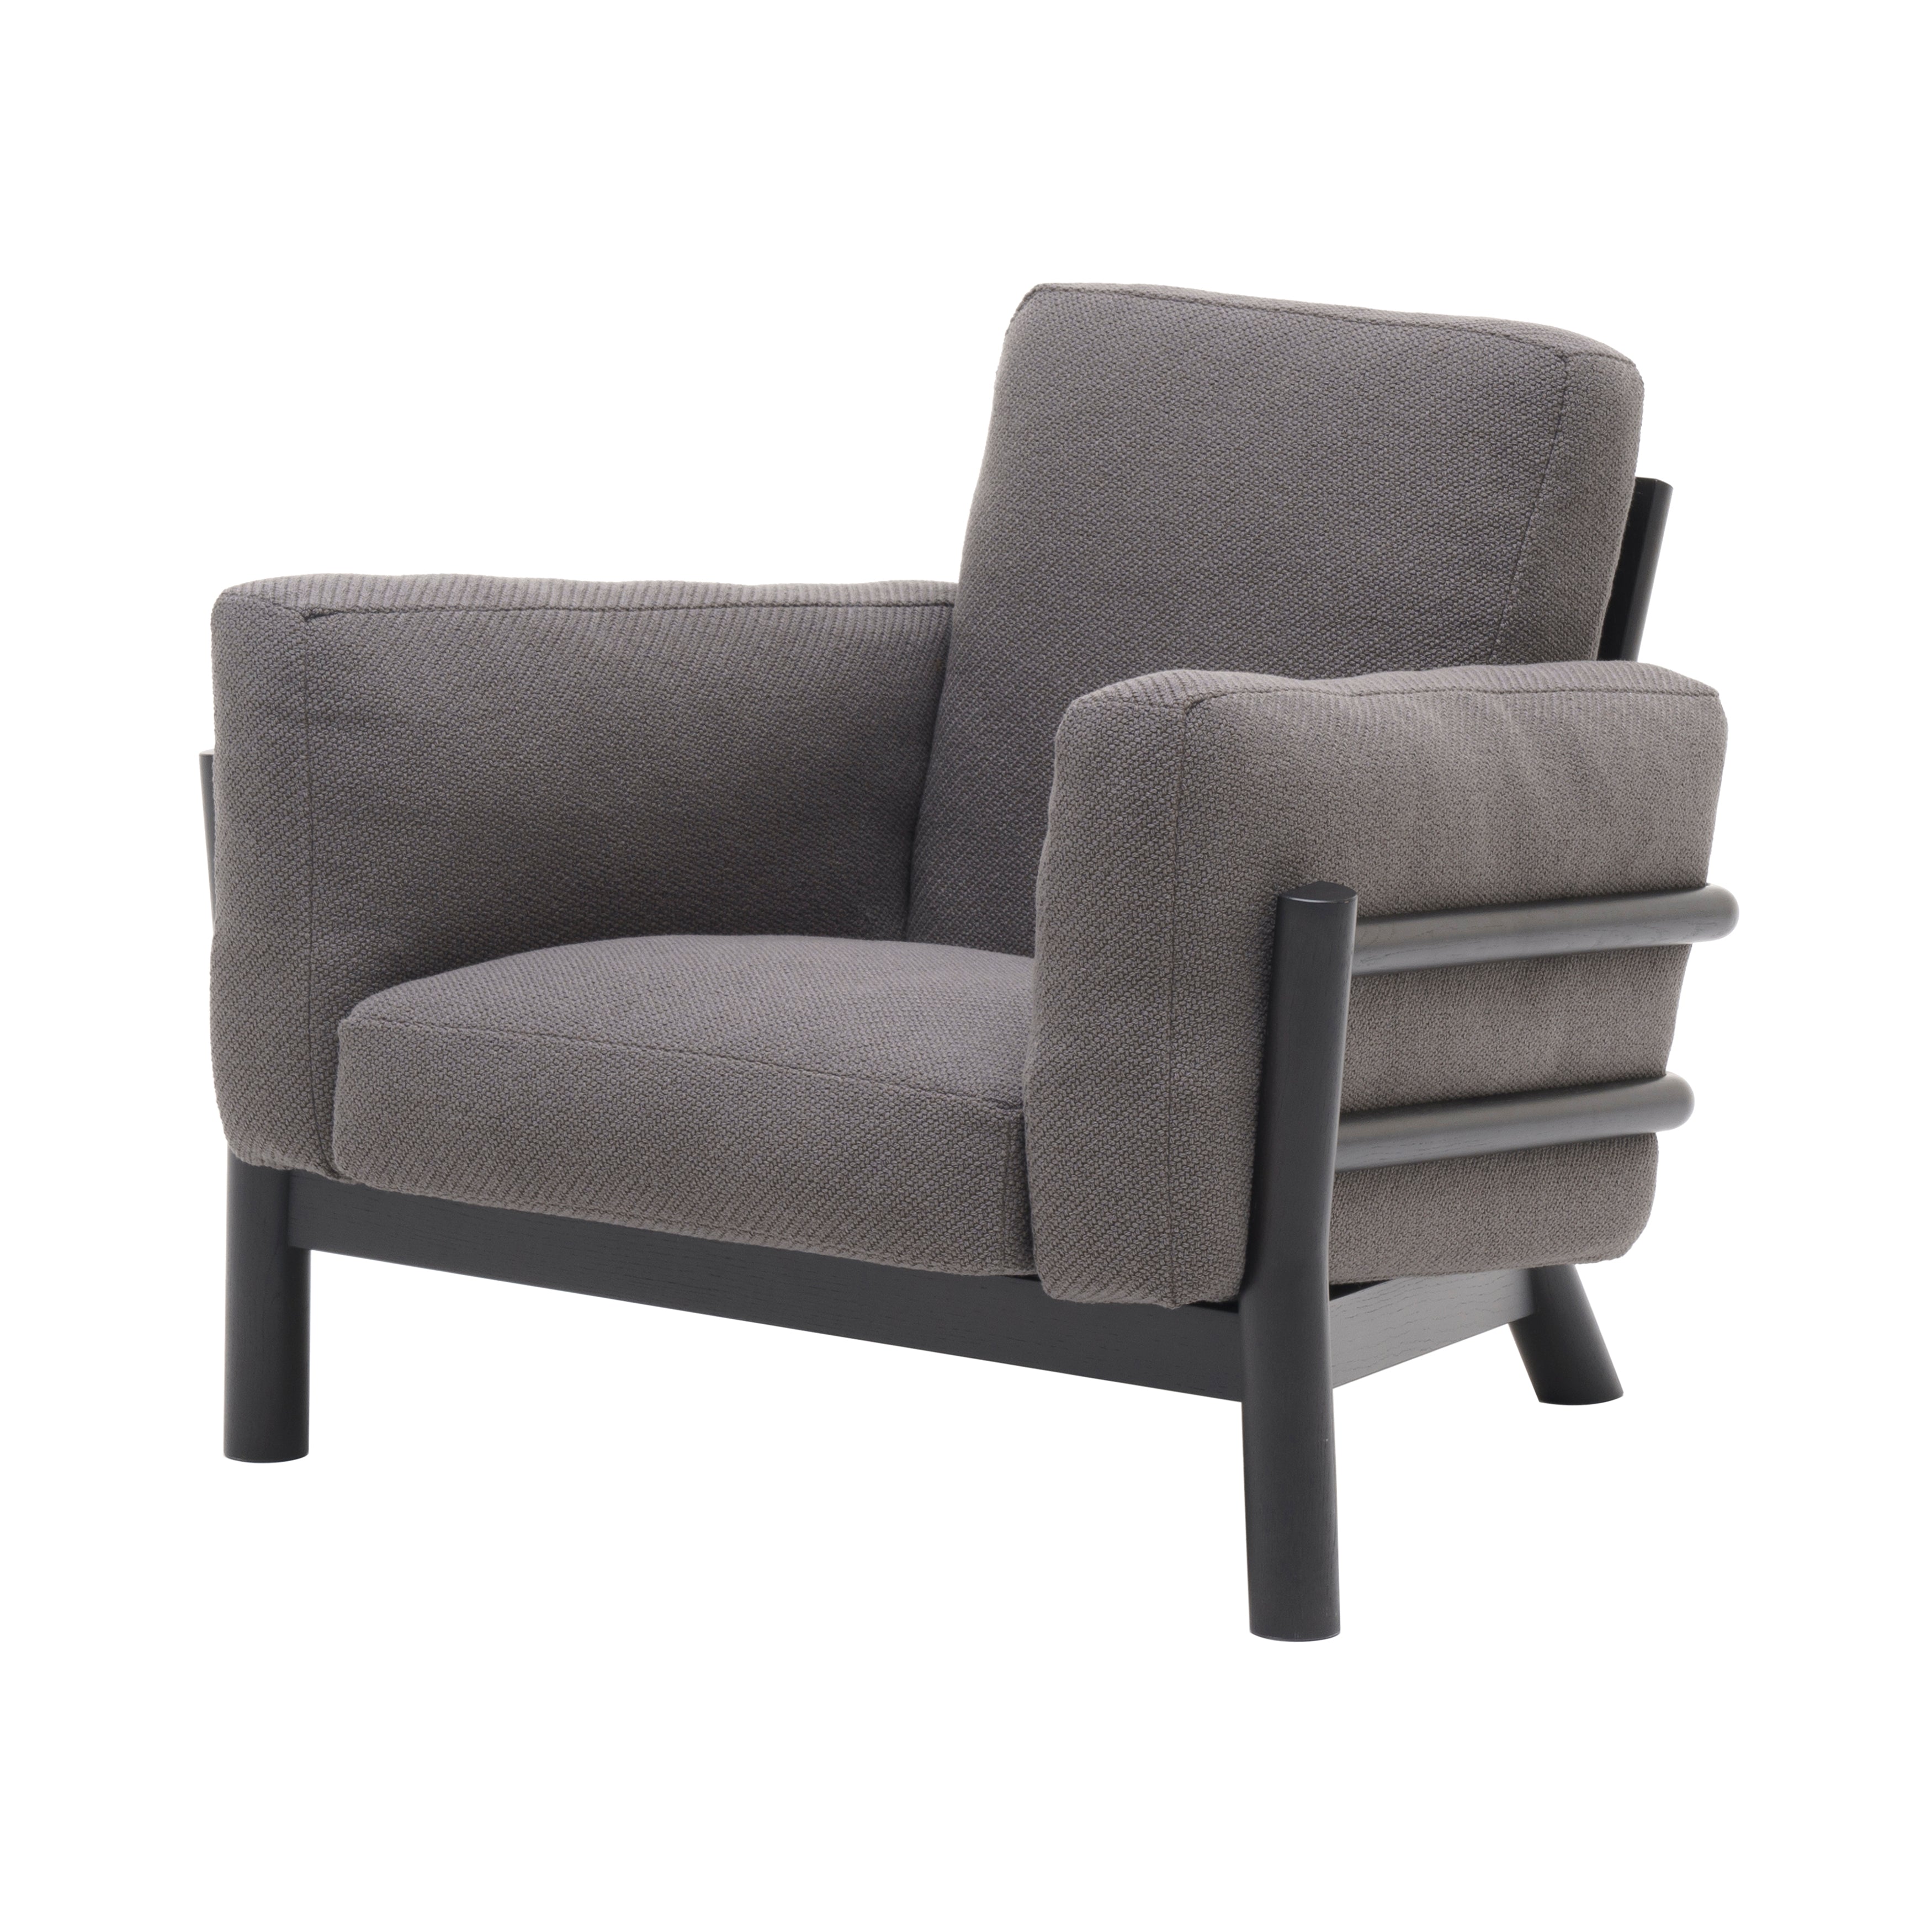 Castor Sofa 1 Seater: Black Oak